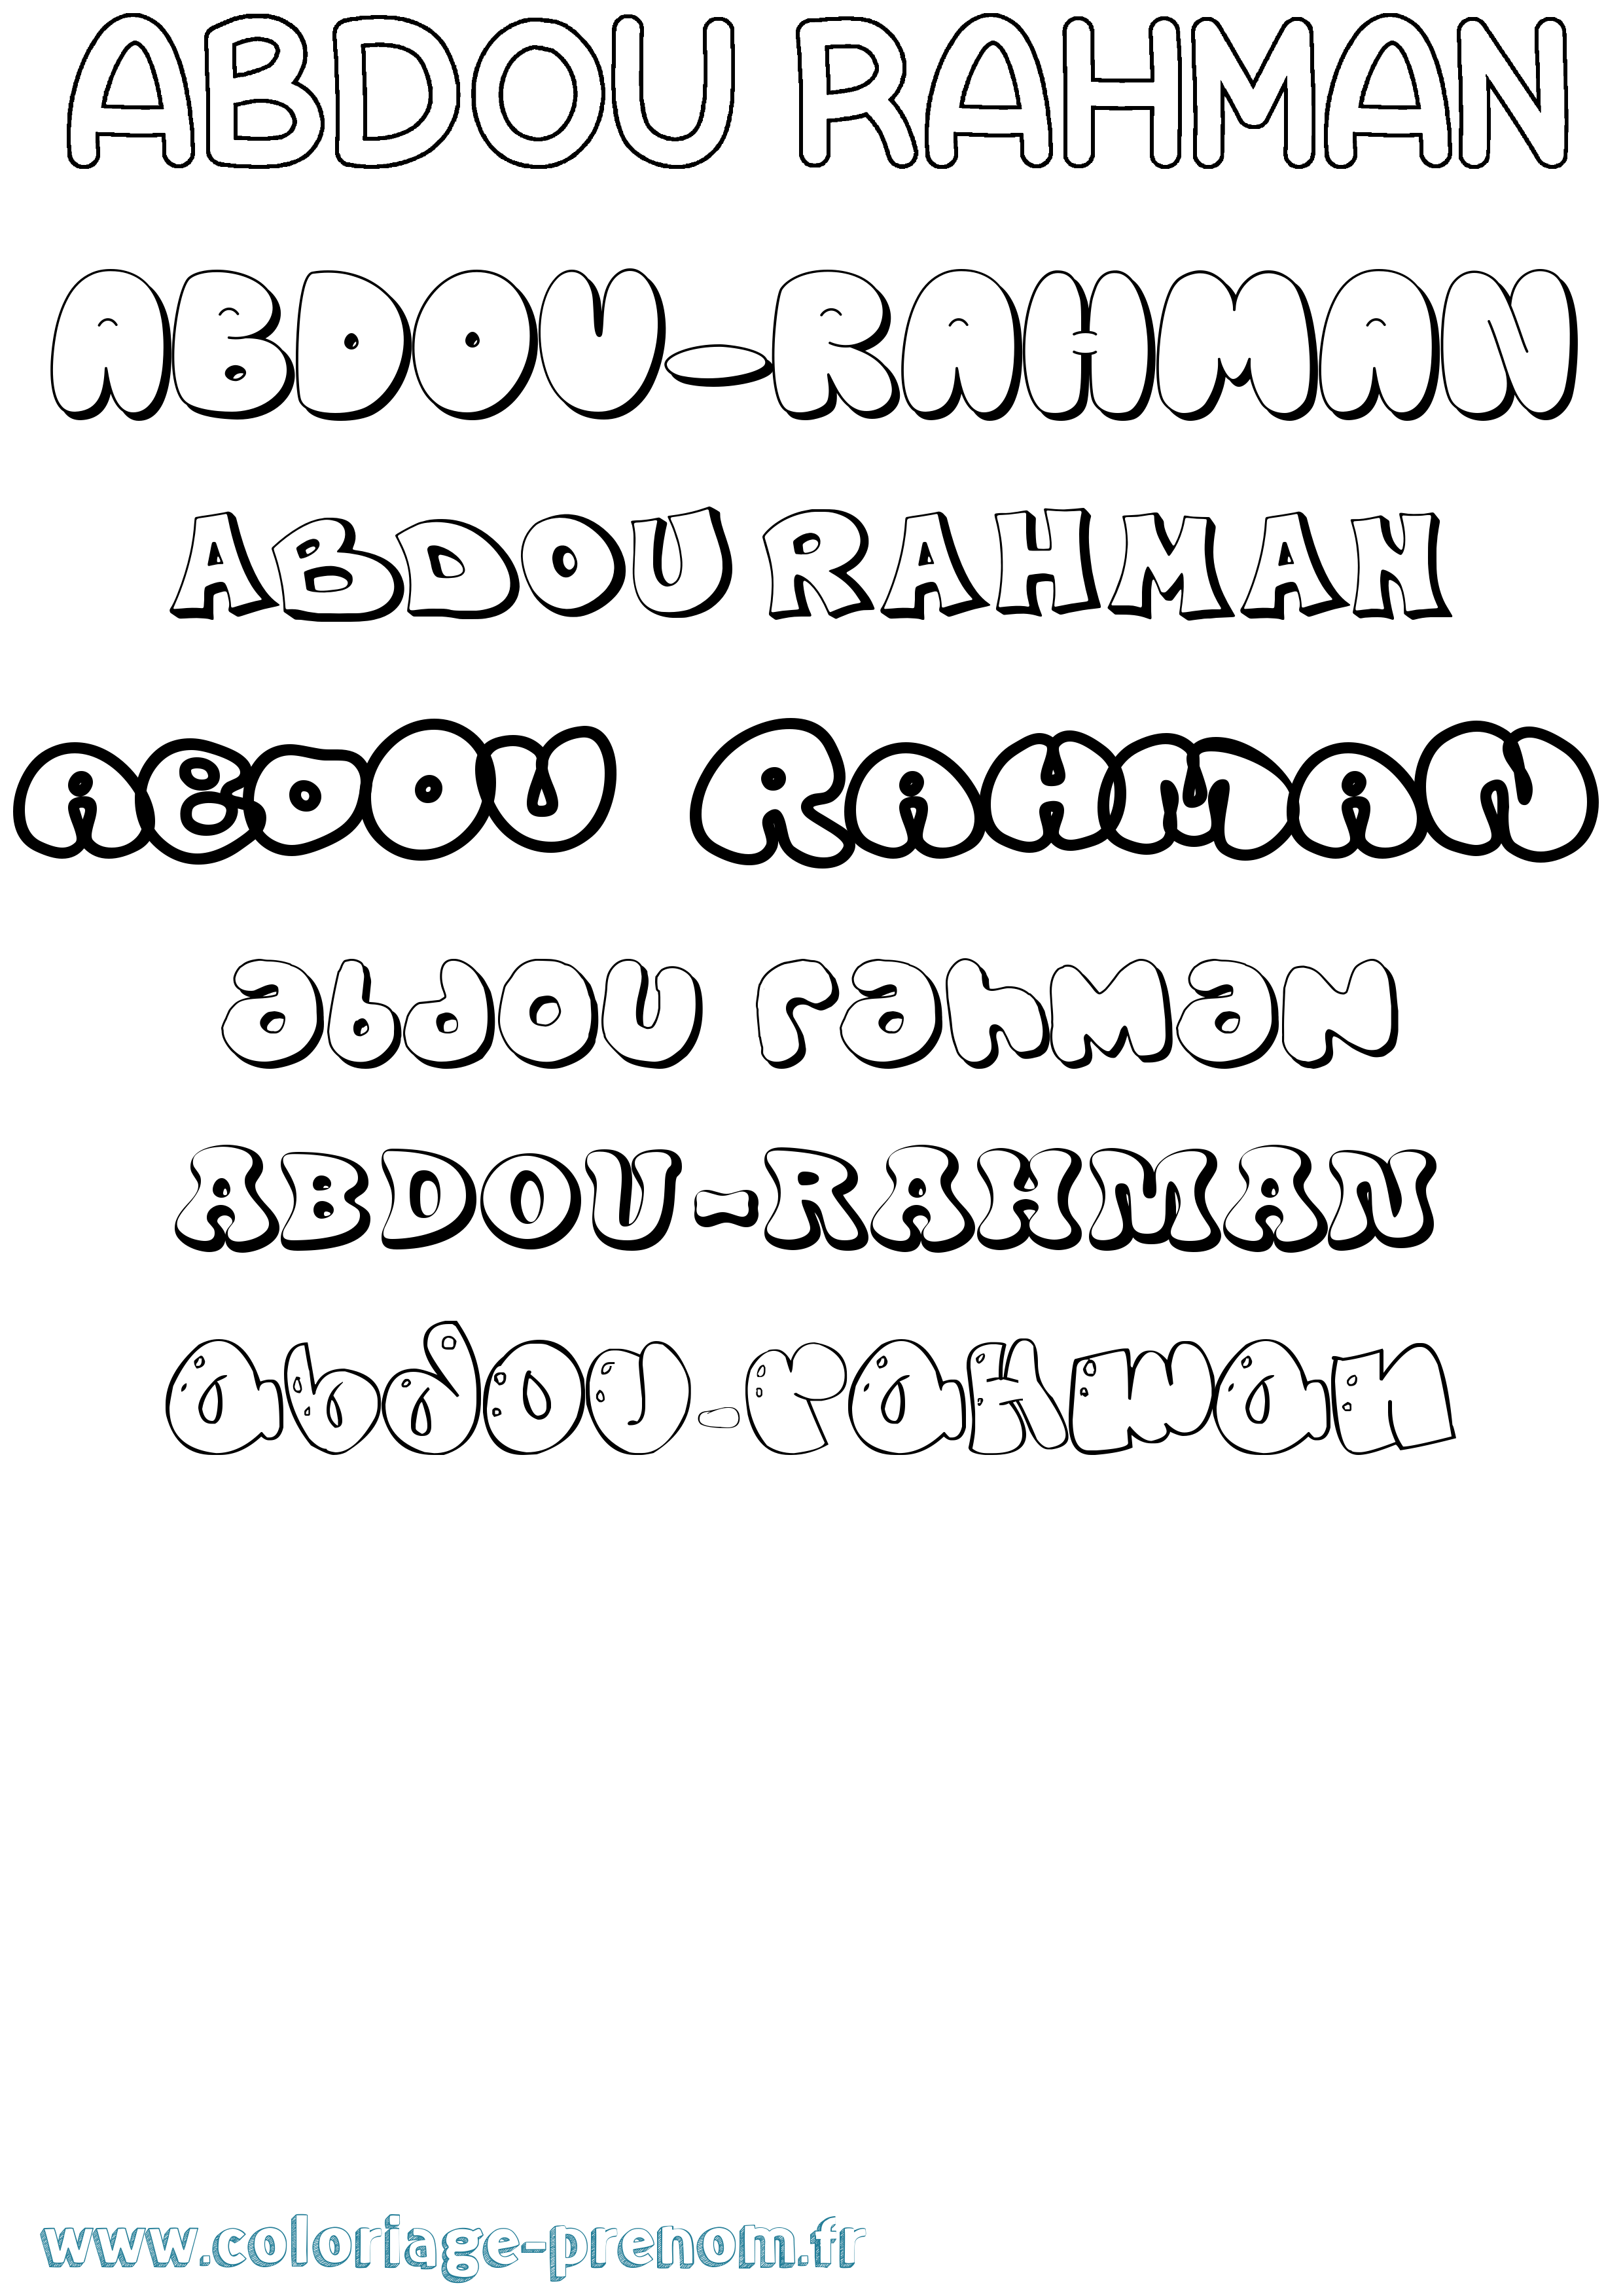 Coloriage prénom Abdou-Rahman Bubble